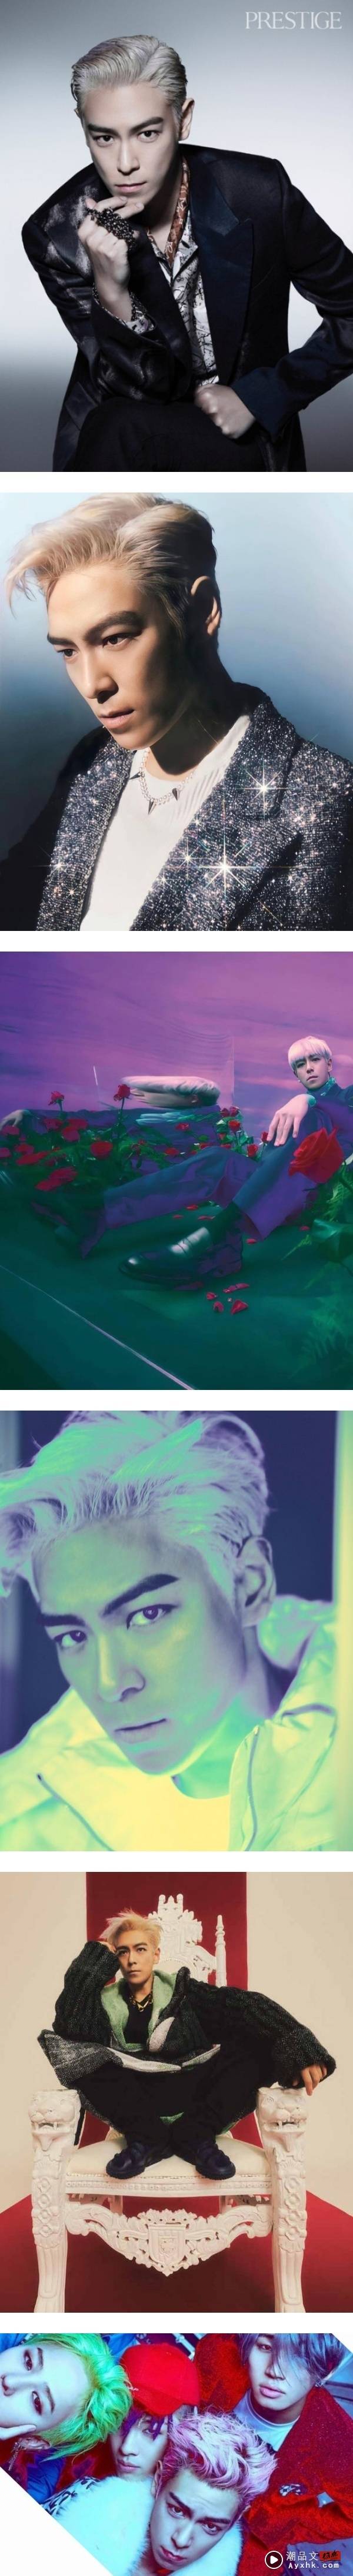 T.O.P吸毒被捕曾试图自杀！看不过眼韩娱只培养机器人 娱乐资讯 图2张